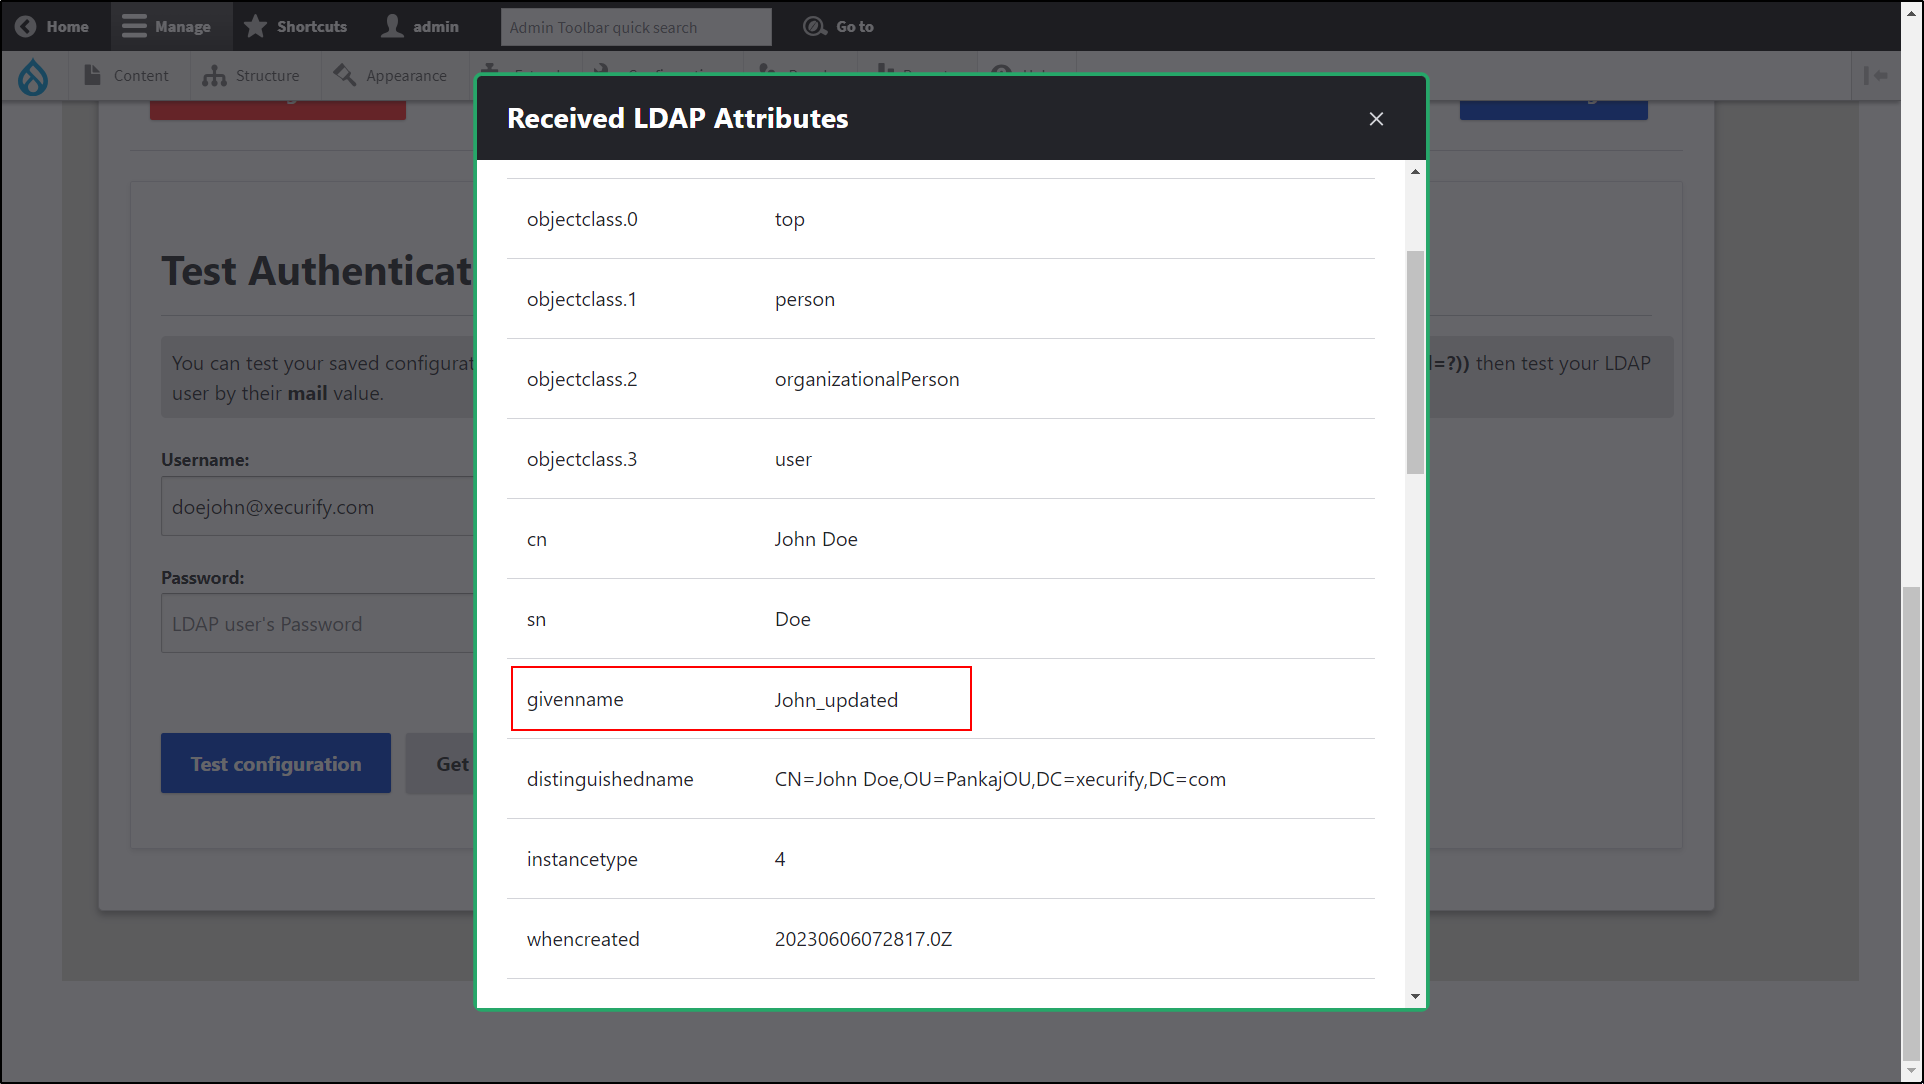 Drupal LDAP/Active Directory Integration - Användarinformationen nedan användarprincipalname och givenmane har uppdaterats i de angivna fälten i popupen Mottaget LDAP-attribut.